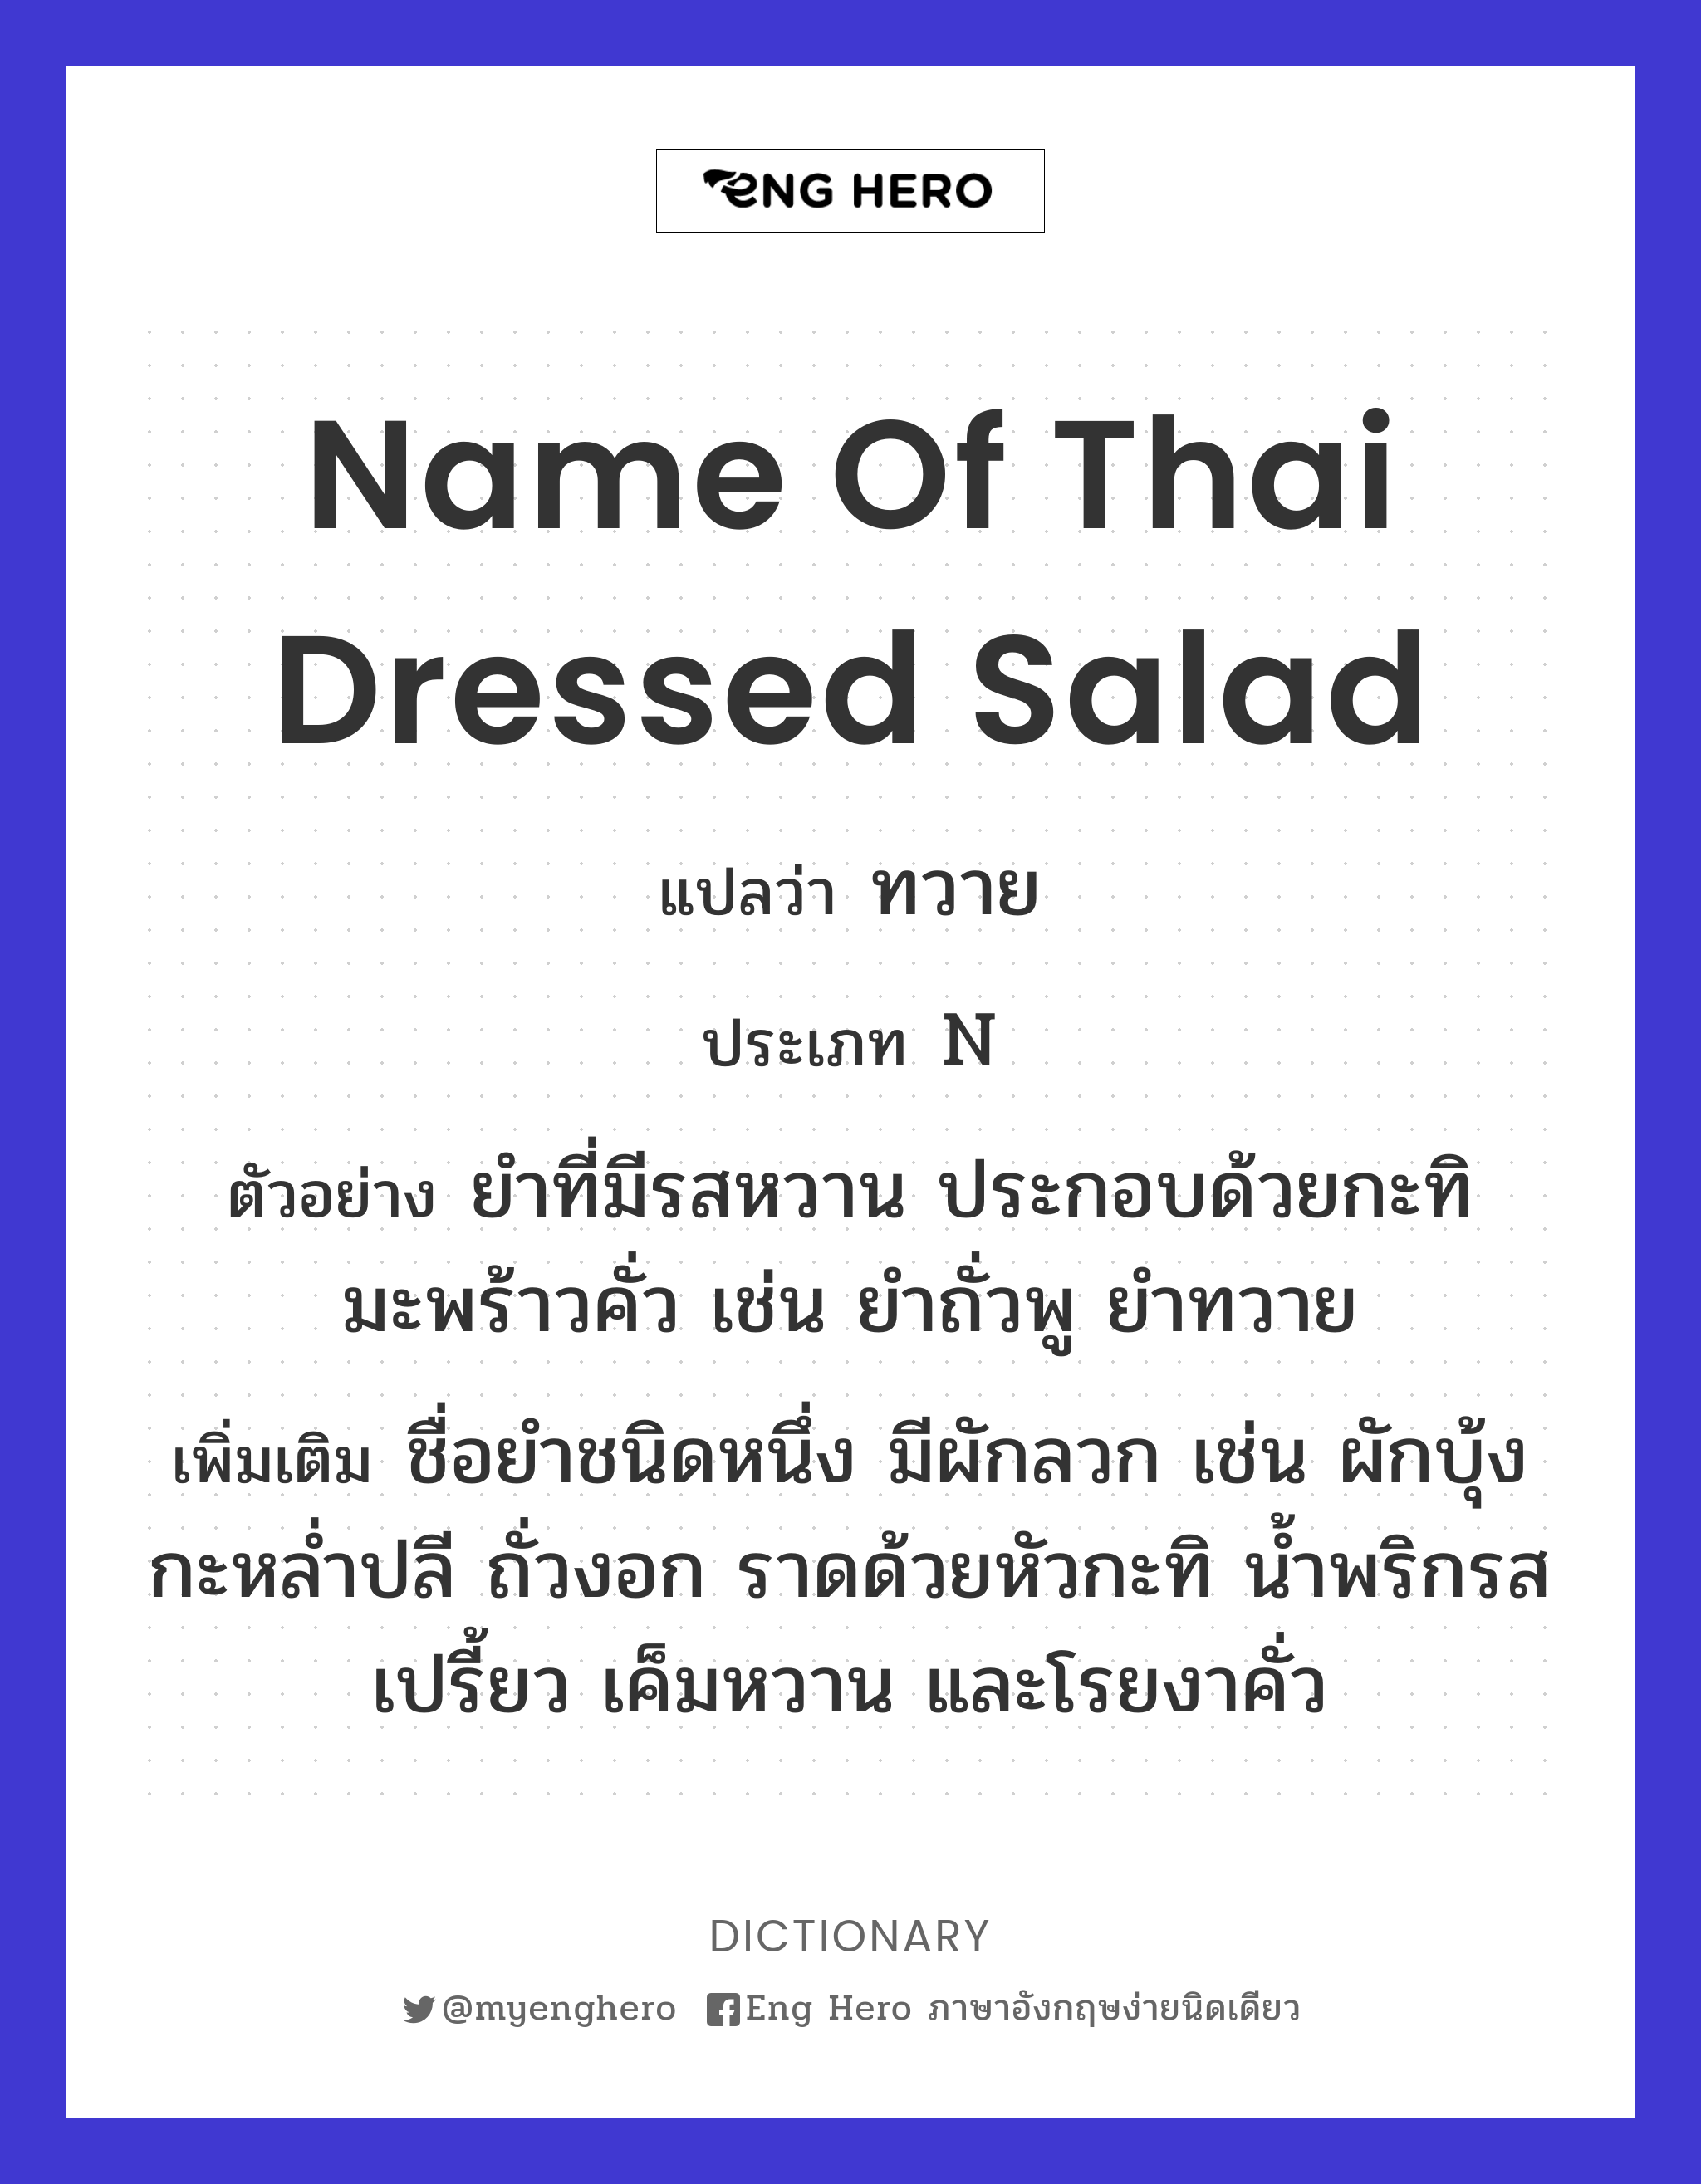 name of Thai dressed salad